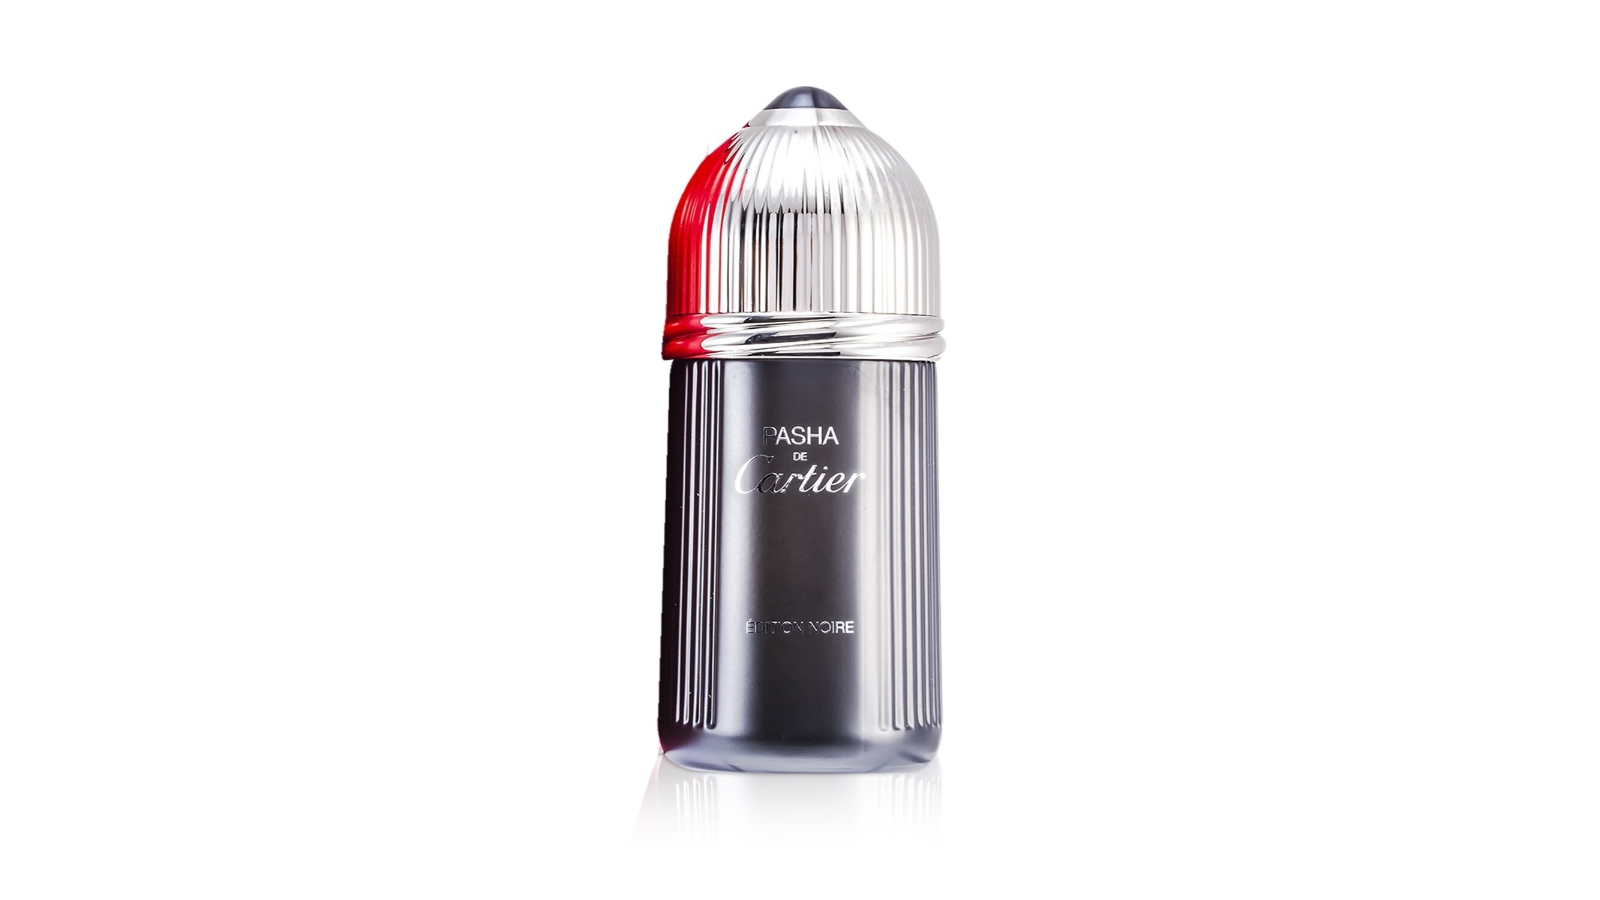 Cartier Pasha de Edition Noire Limited Edition For Men Eau De Toilette 100ml at Ratans Online Shop - Perfumes Wholesale and Retailer Fragrance